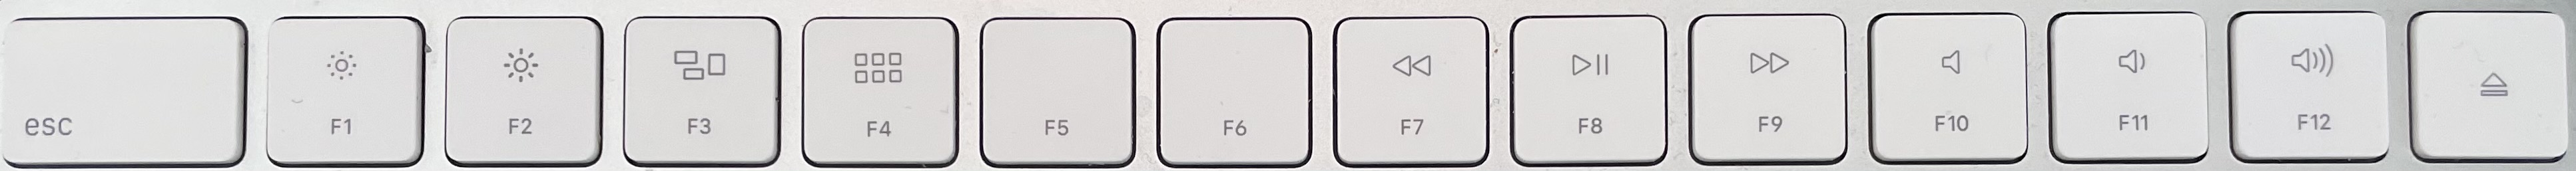  Новая клавиатура Mac Magic Keyboard: что мы хотим видеть - старые функциональные клавиши